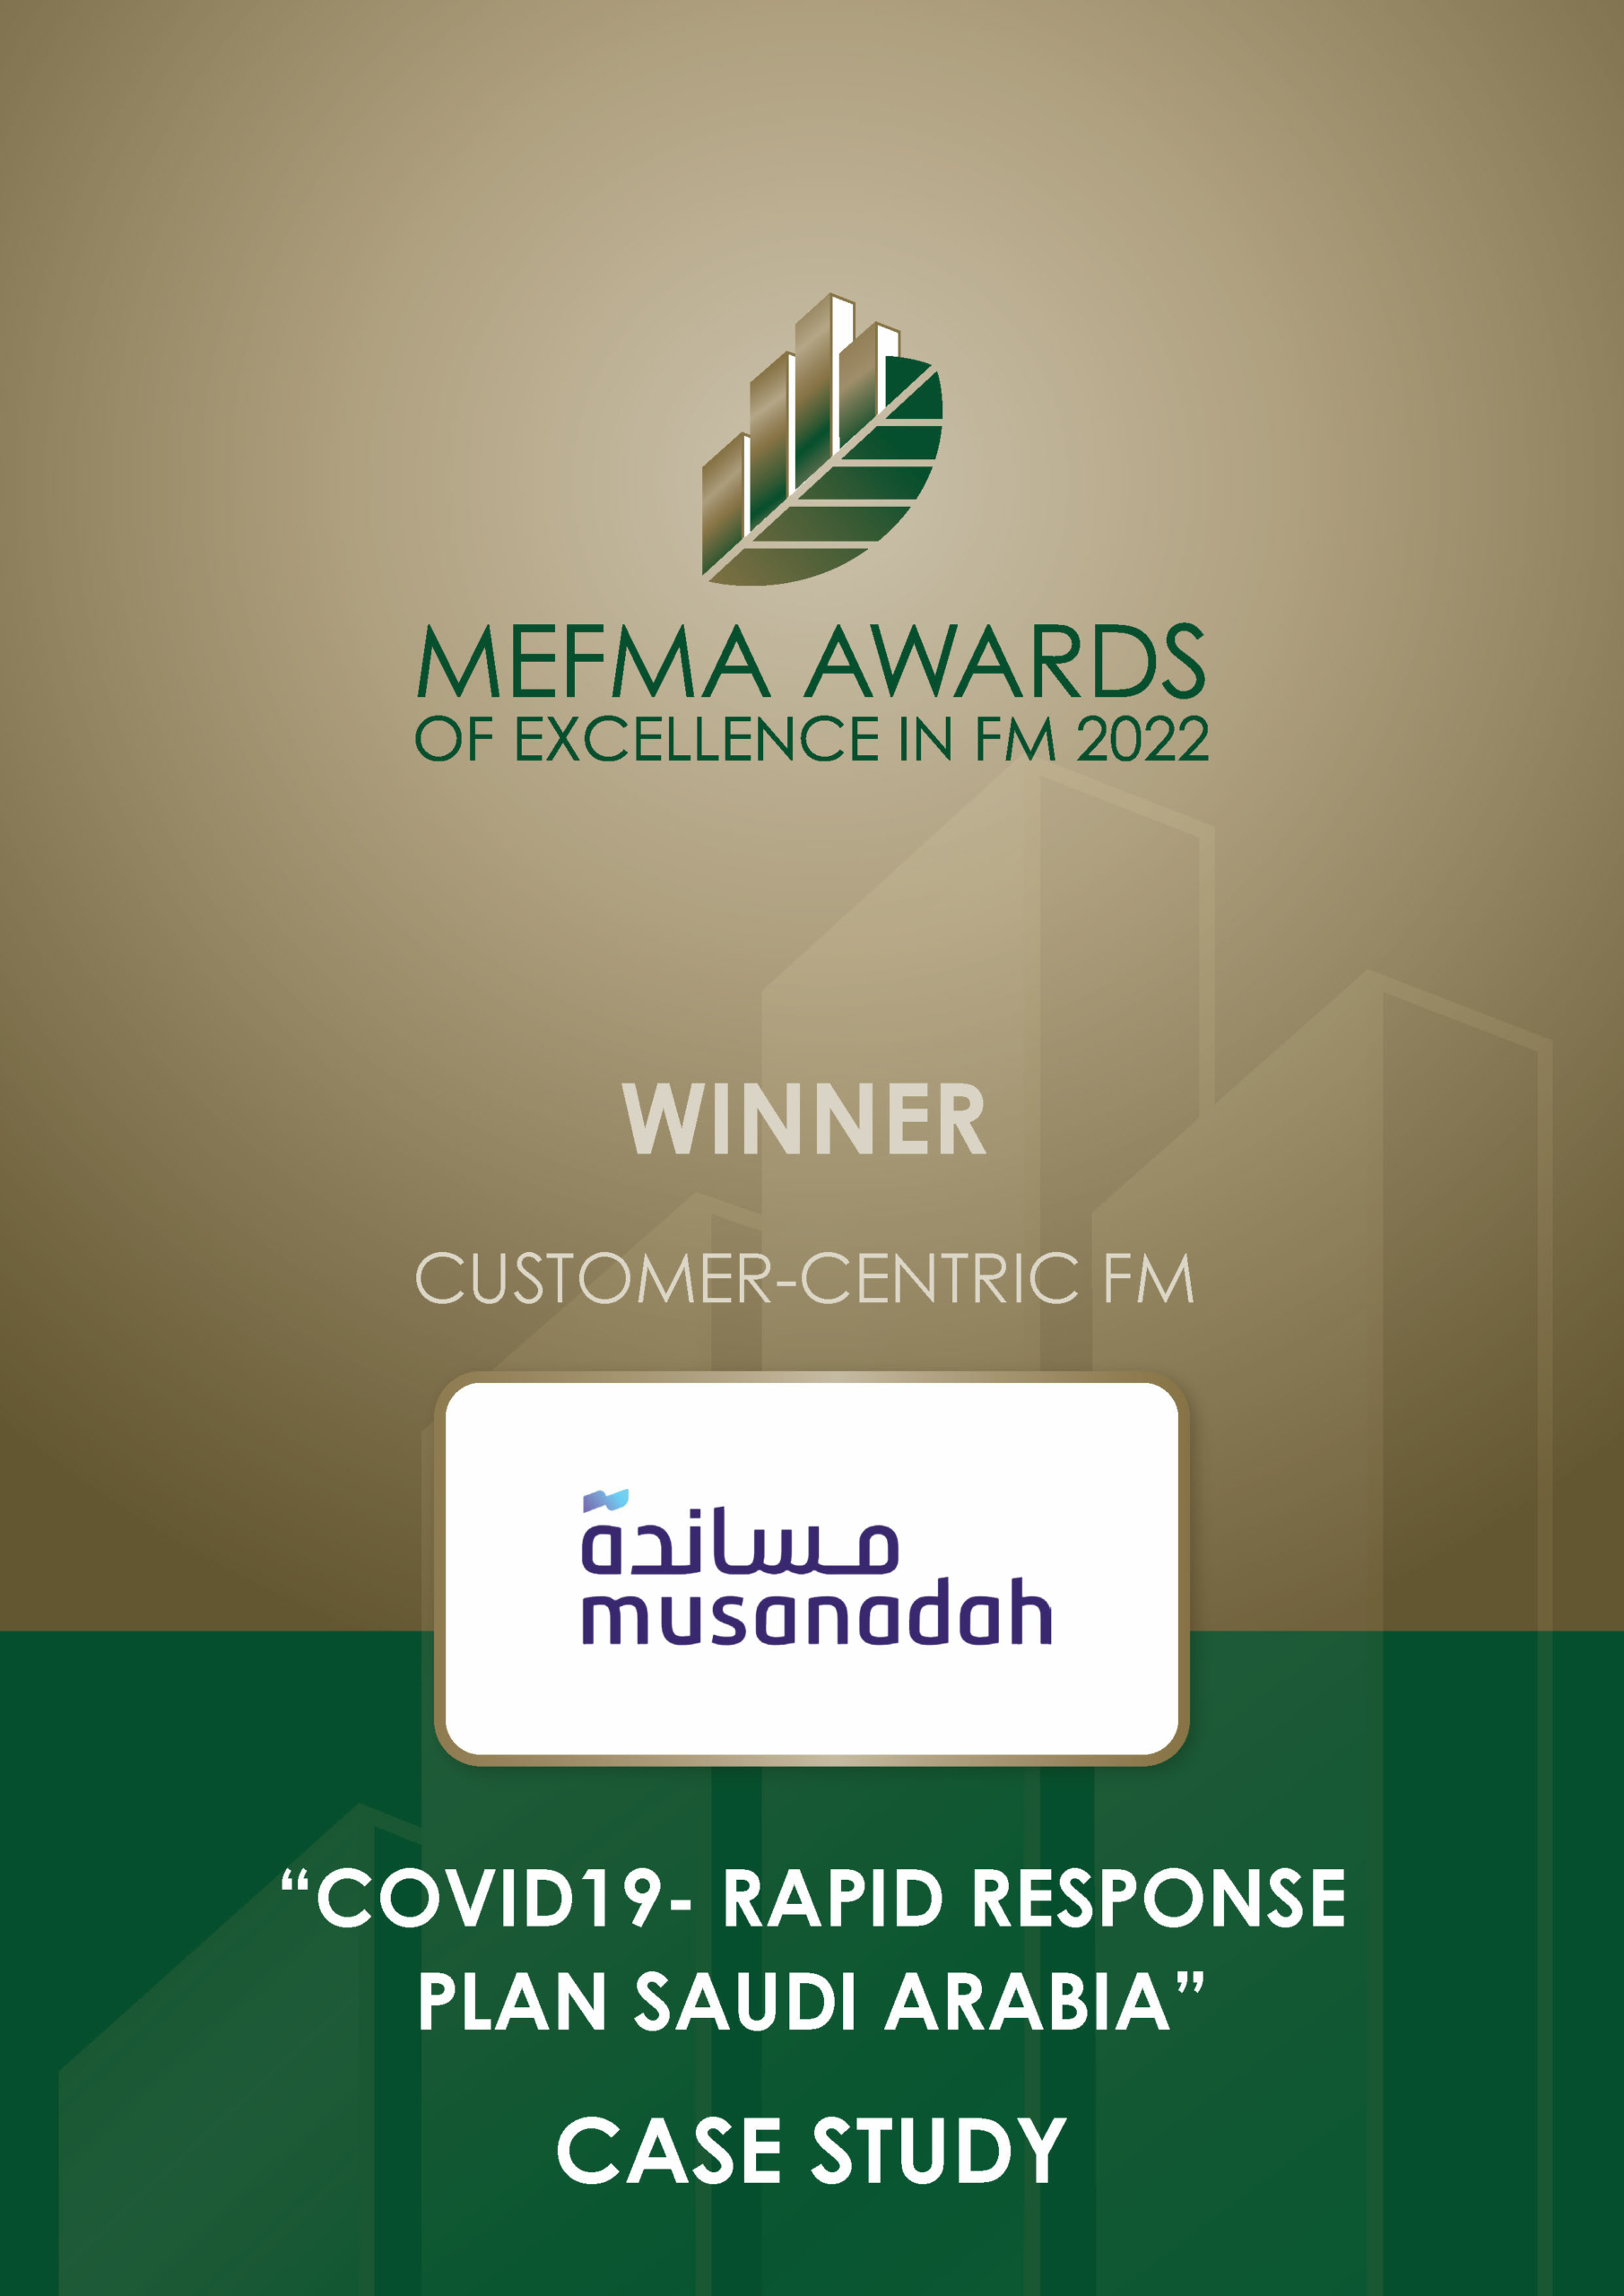 MEFMA awards 2022 winner Musanadah - customer centric FM.